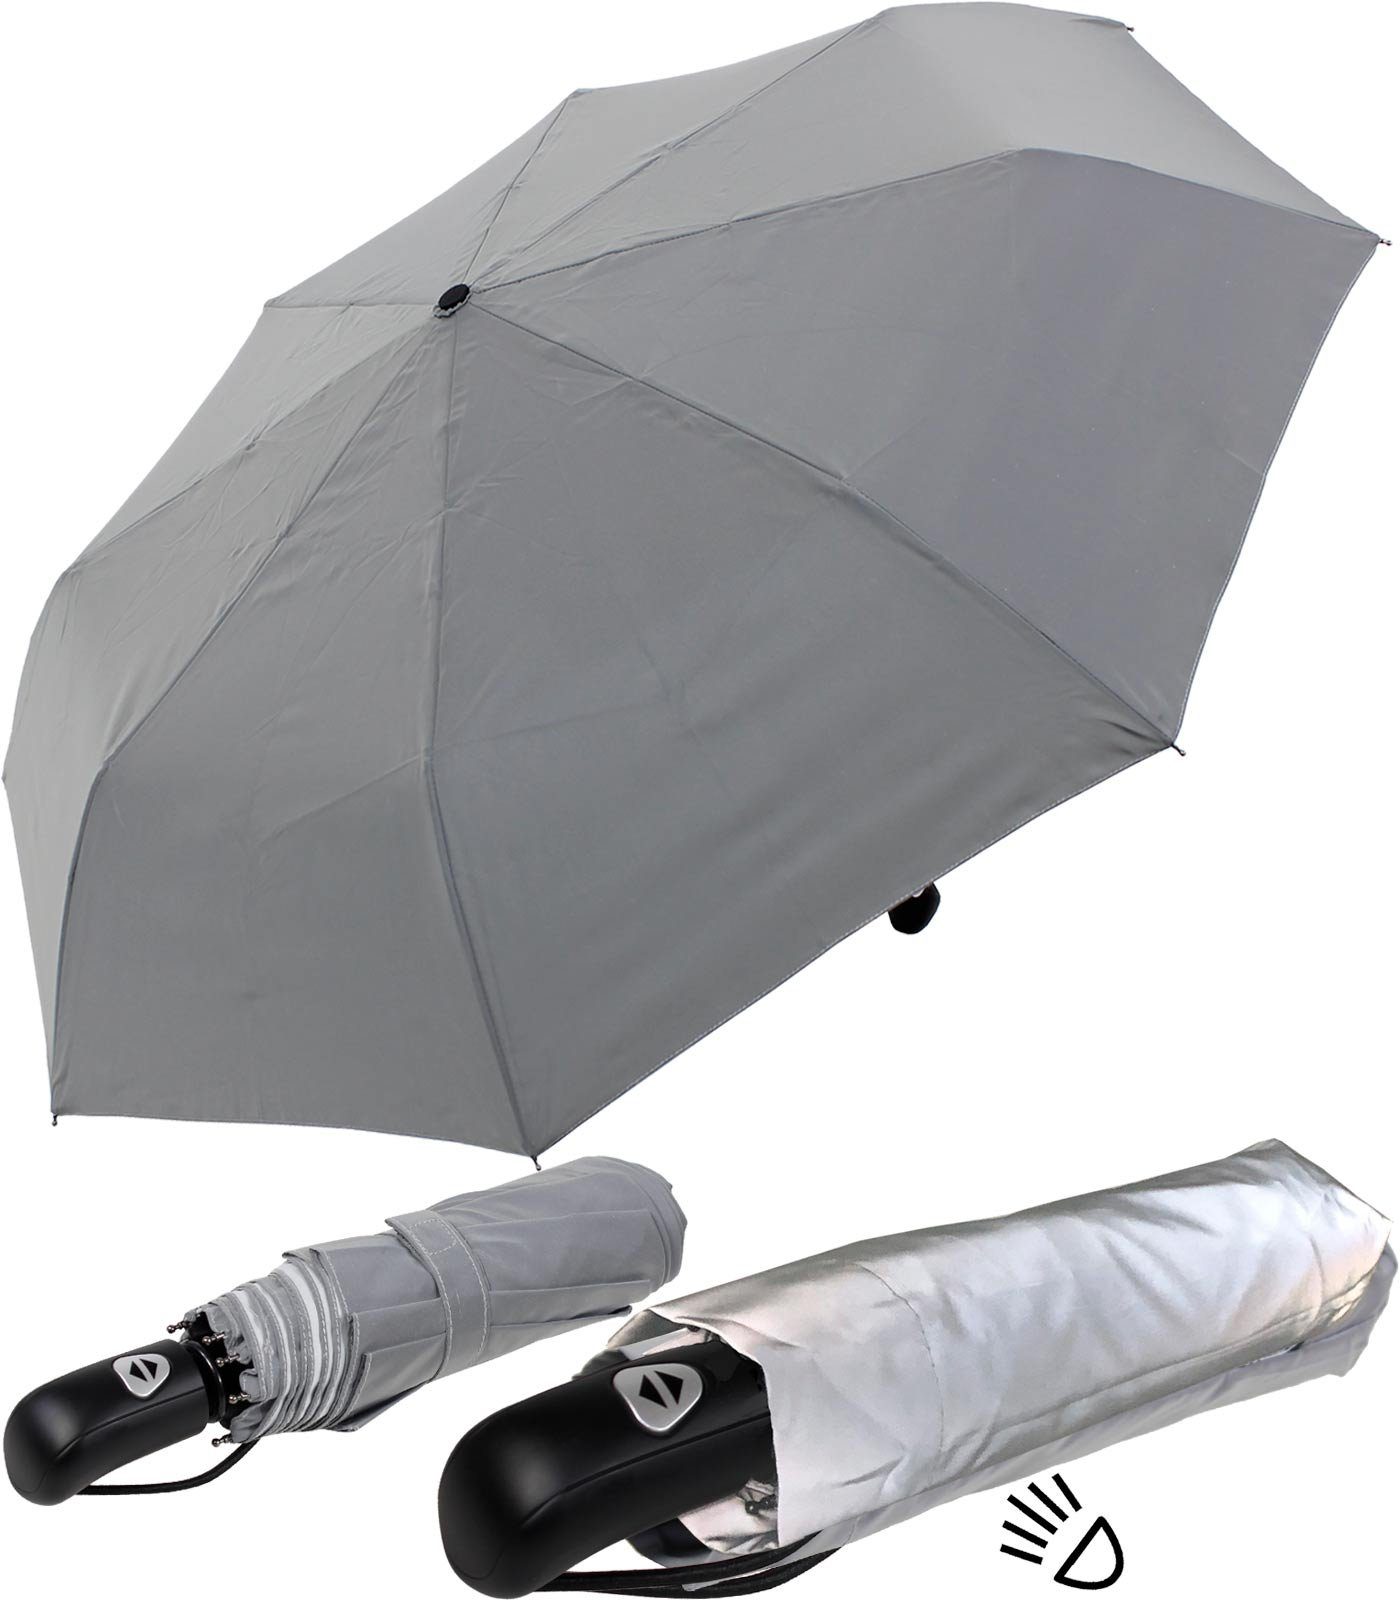 aus mit stabiler First das Material stark Regenschirm reflektierenden einem Class ganze Taschenregenschirm Automatik, besteht Dach iX-brella